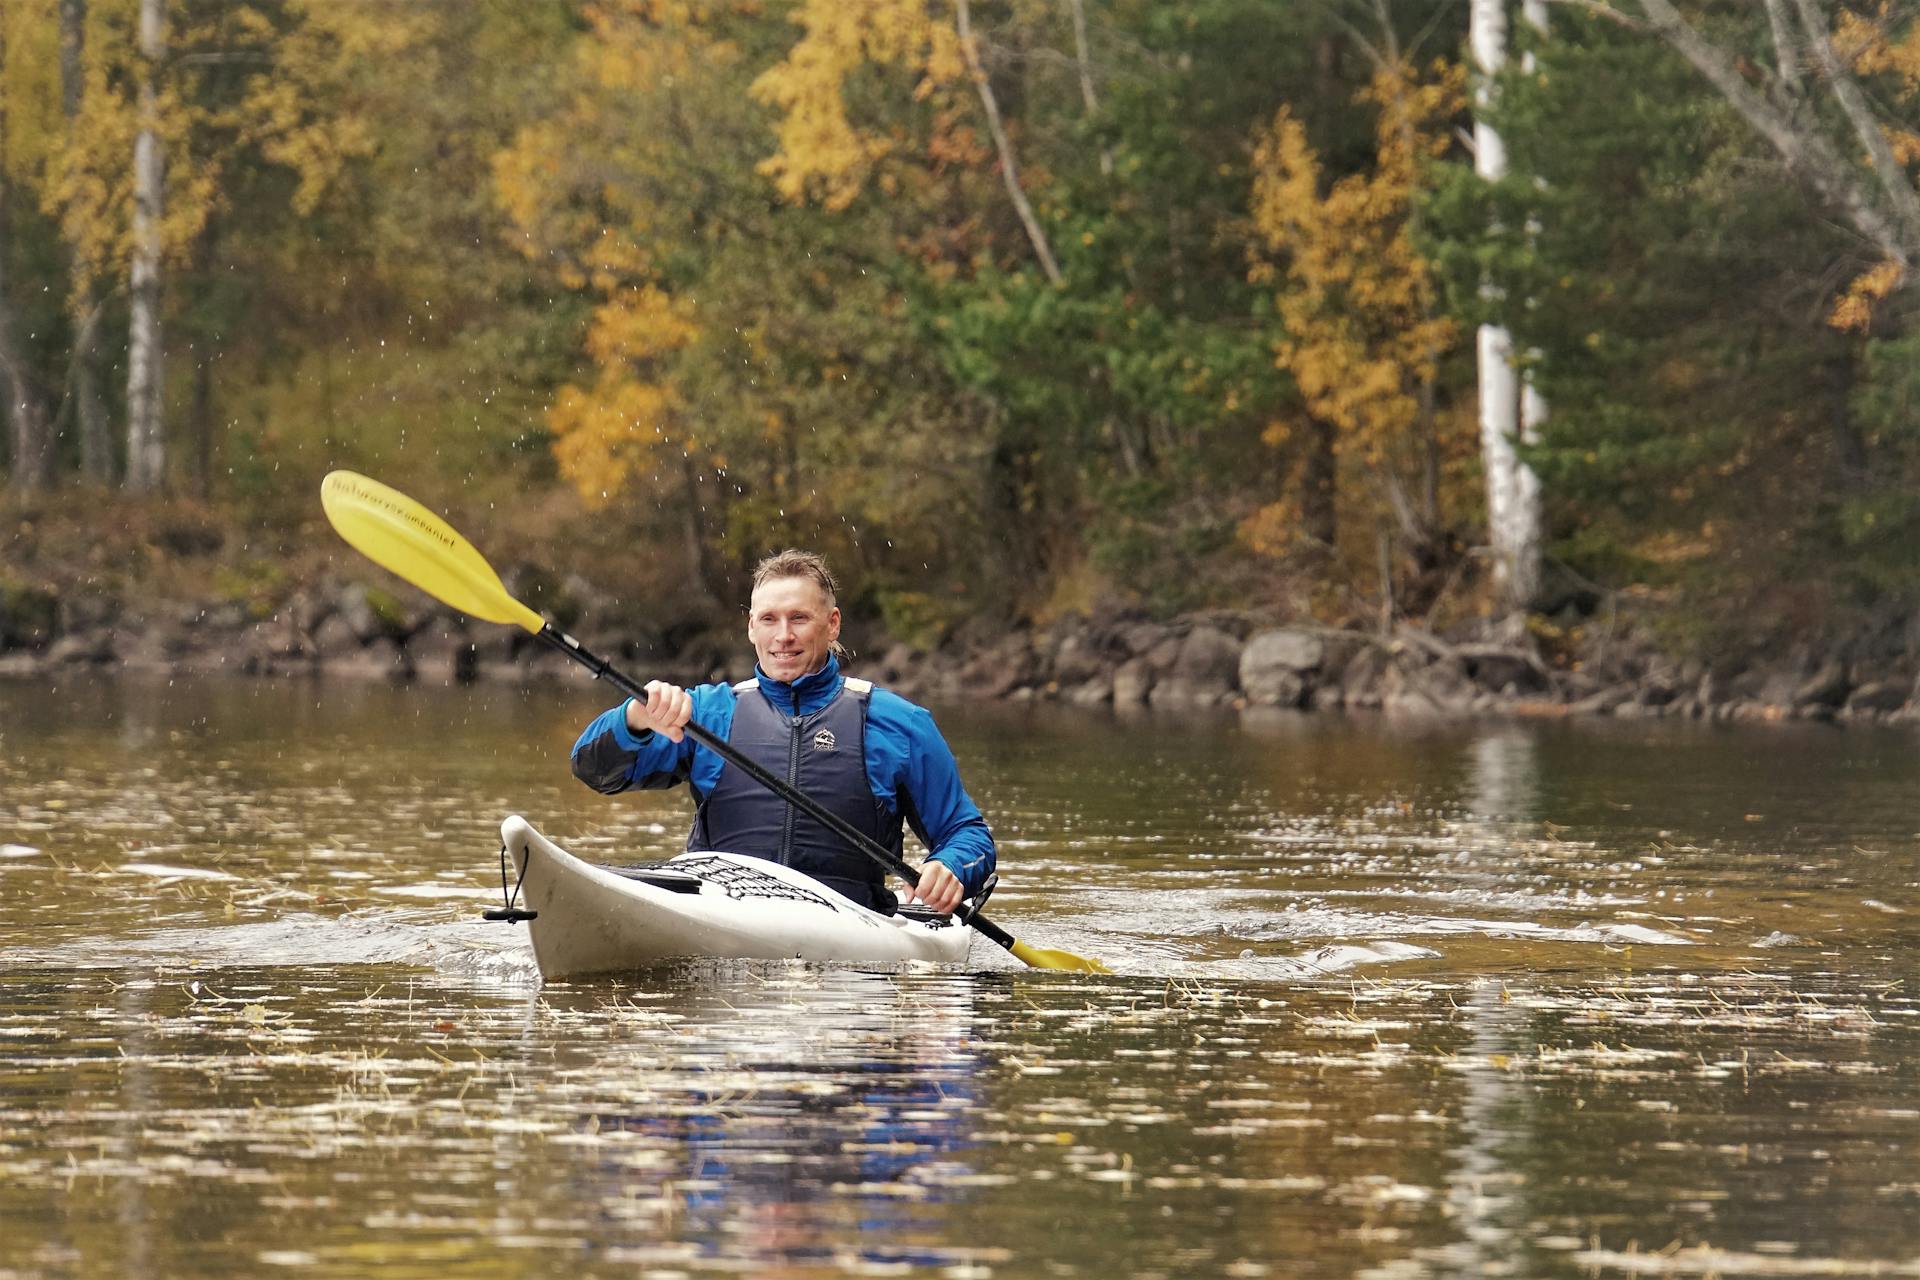 Un homme fait du kayak, envoyant des gouttelettes d'eau voler de la pagaie, dans la réserve naturelle de Malingsbo-Kloten en Suède.